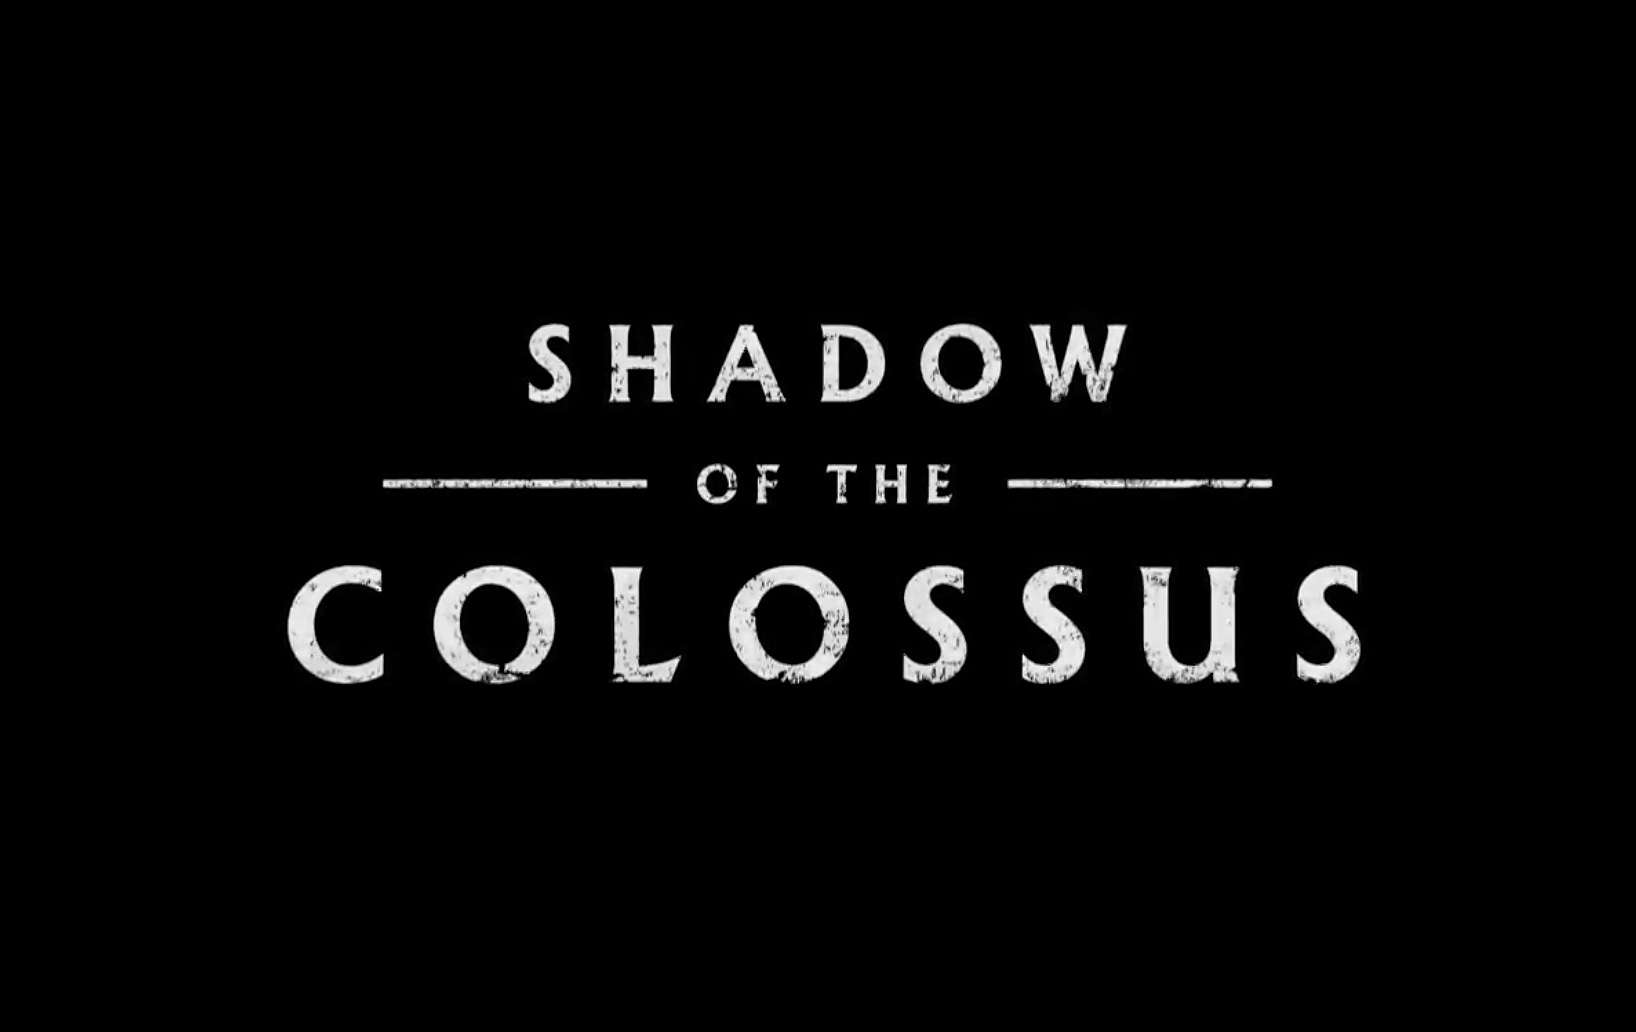 Shadow Of The Colossus lidera el top de ventas físicas en España de febrero